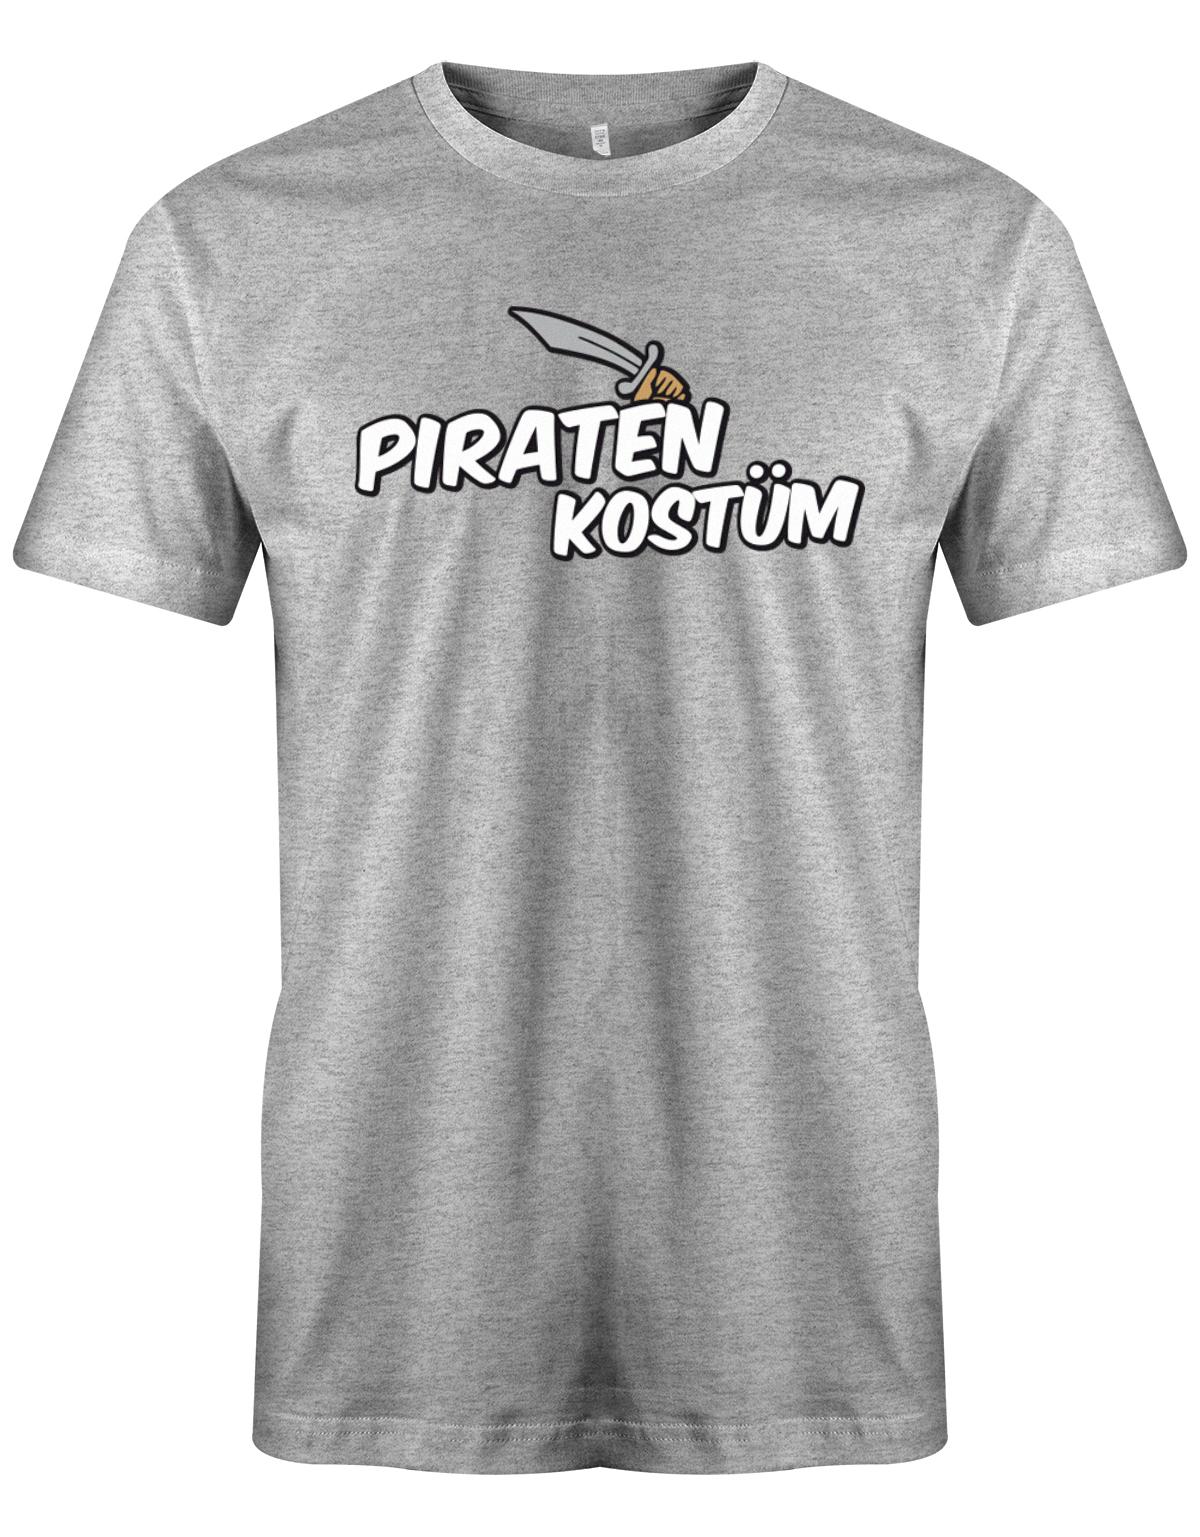 Piraten-Kost-m-Fasching-Karneval-herren-Shirt-Grau